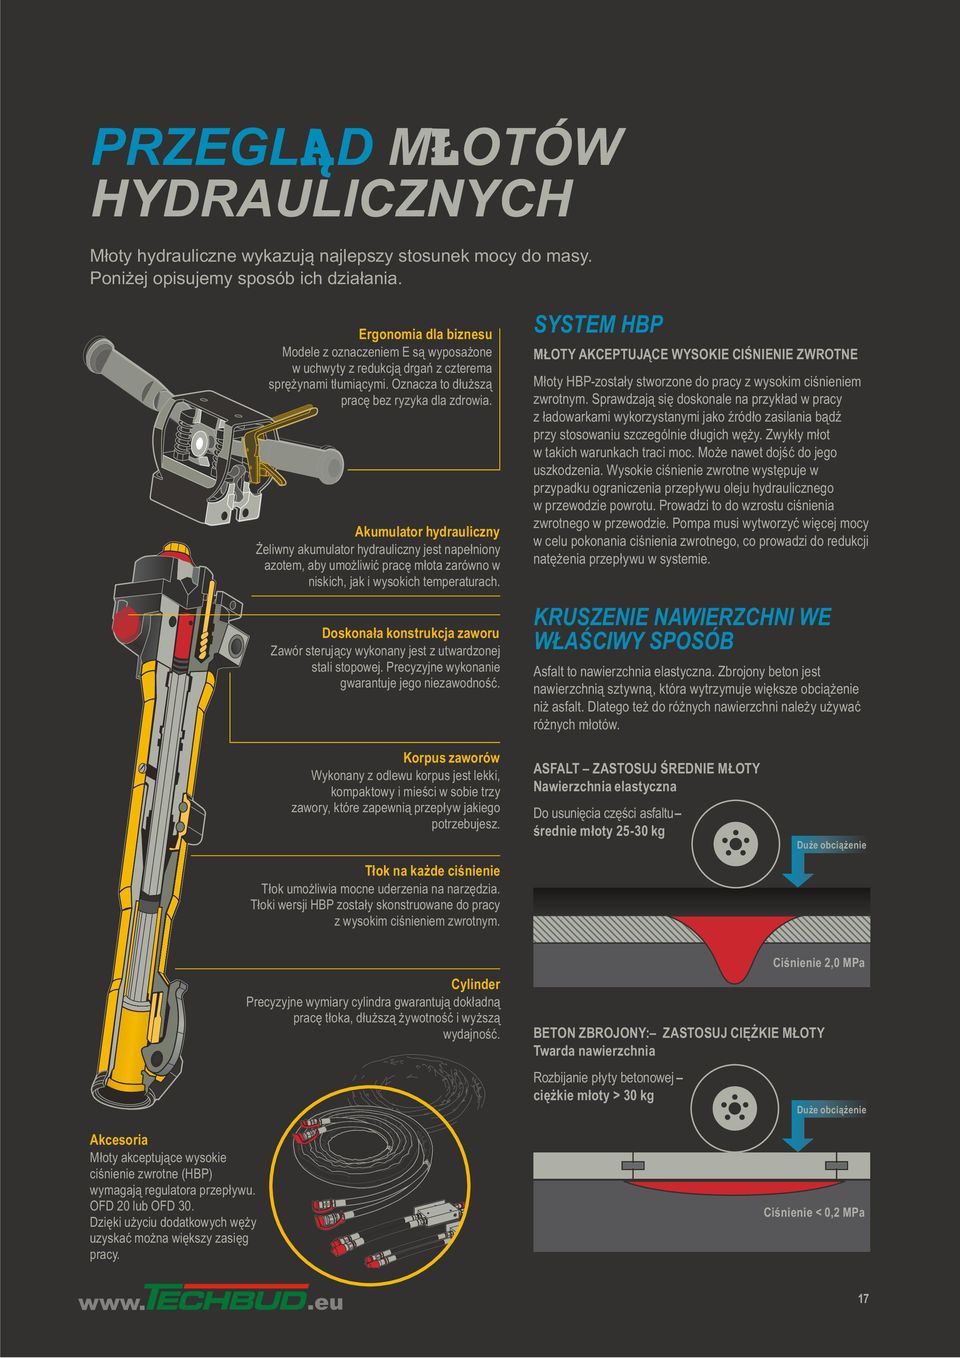 Akumulator hydrauliczny Żeliwny akumulator hydrauliczny jest napełniony azotem, aby umożliwić pracę młota zarówno w niskich, jak i wysokich temperaturach.